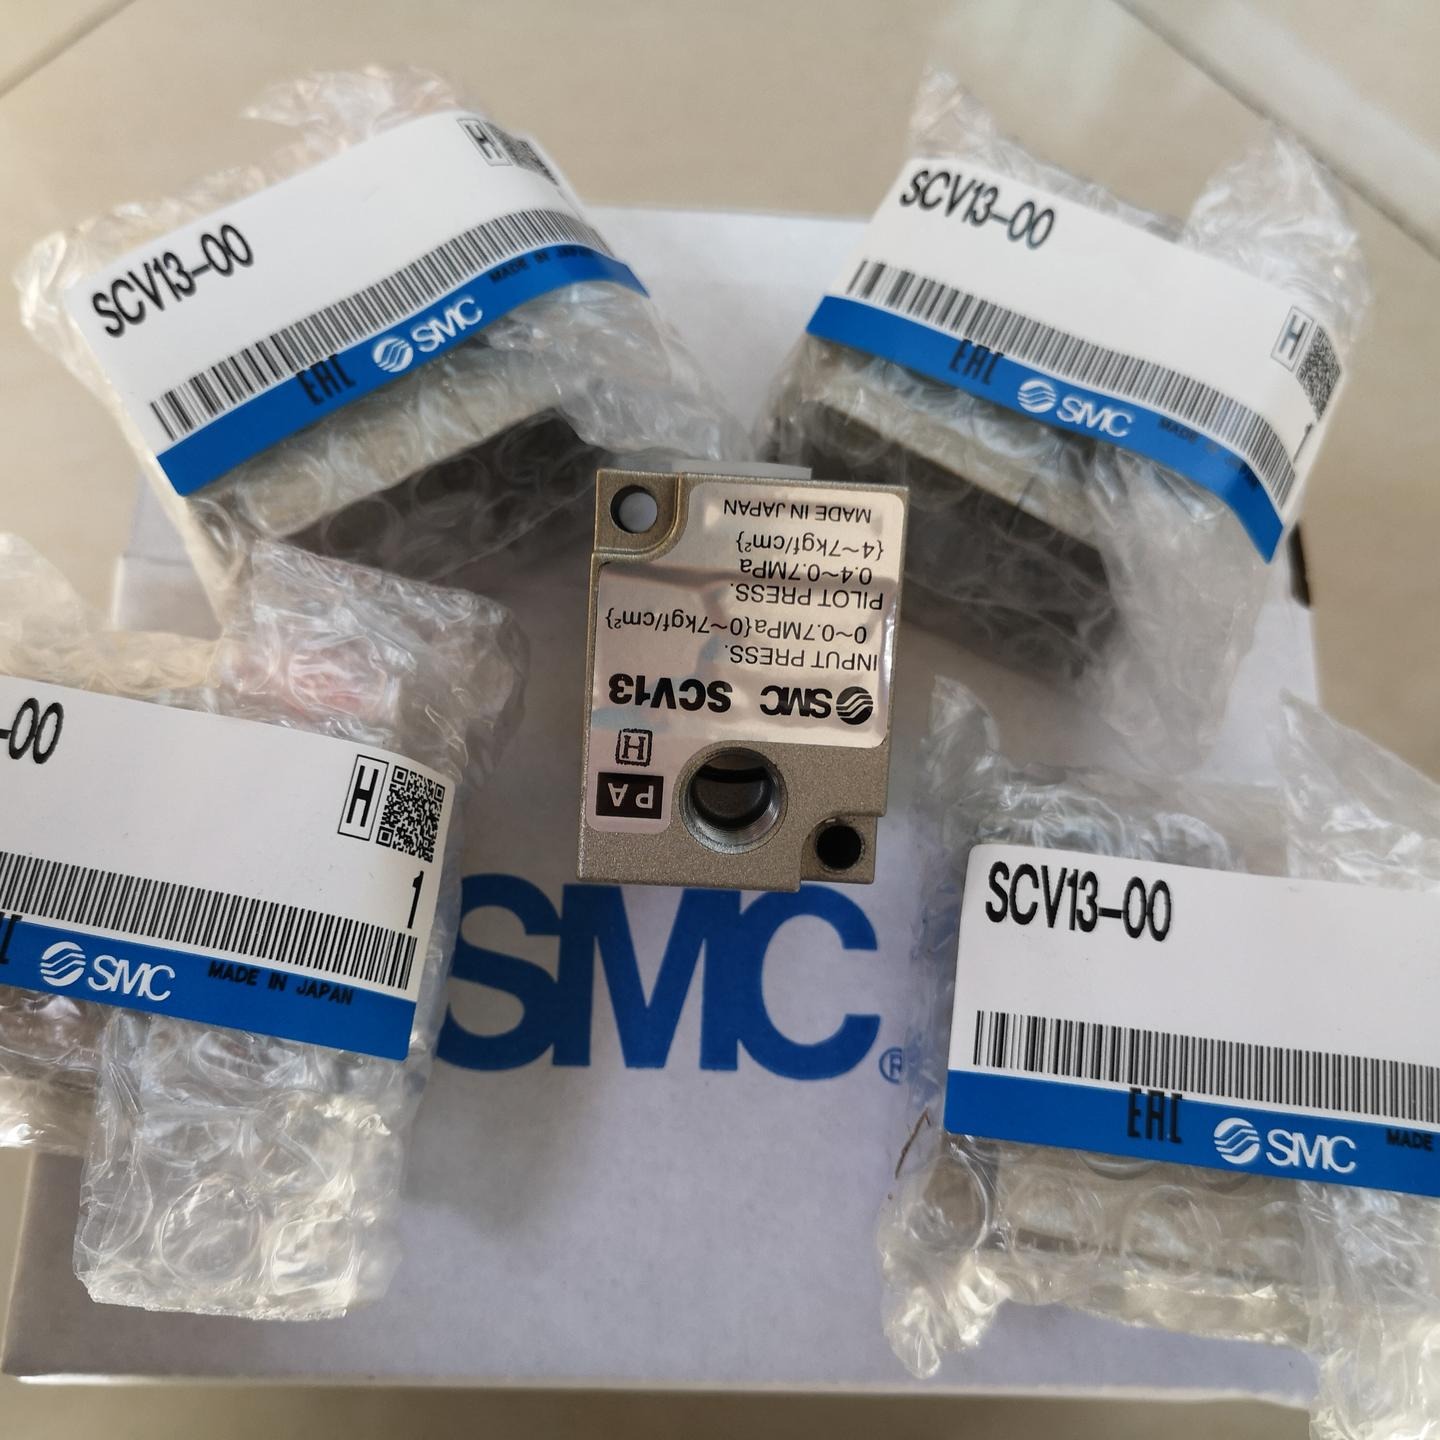 SMC涂料换色阀SVC13-00经销批发价格 SMC涂料换色阀模块批发图片